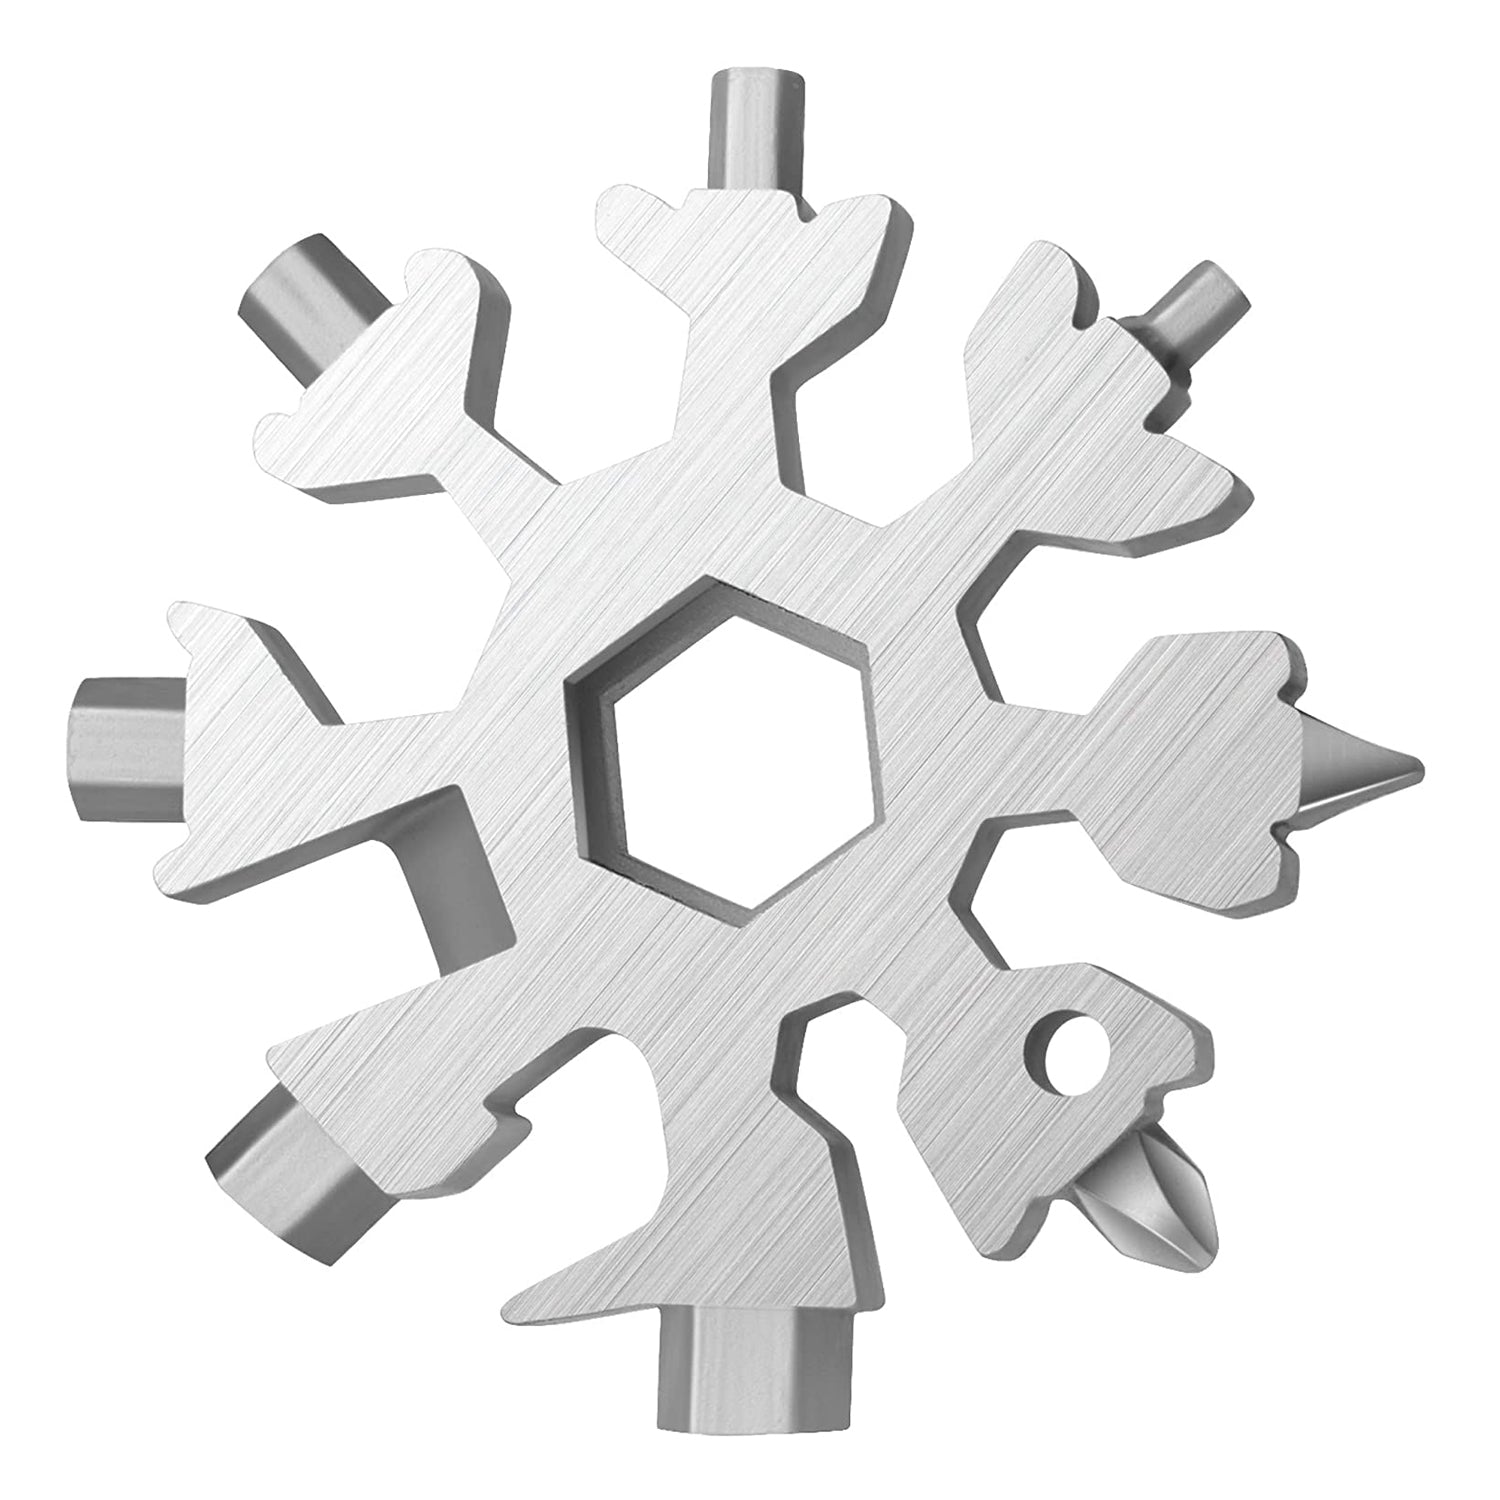 1787 Snowflake Multi-Tool Stainless Steel Snowflake Bottle Opener DeoDap